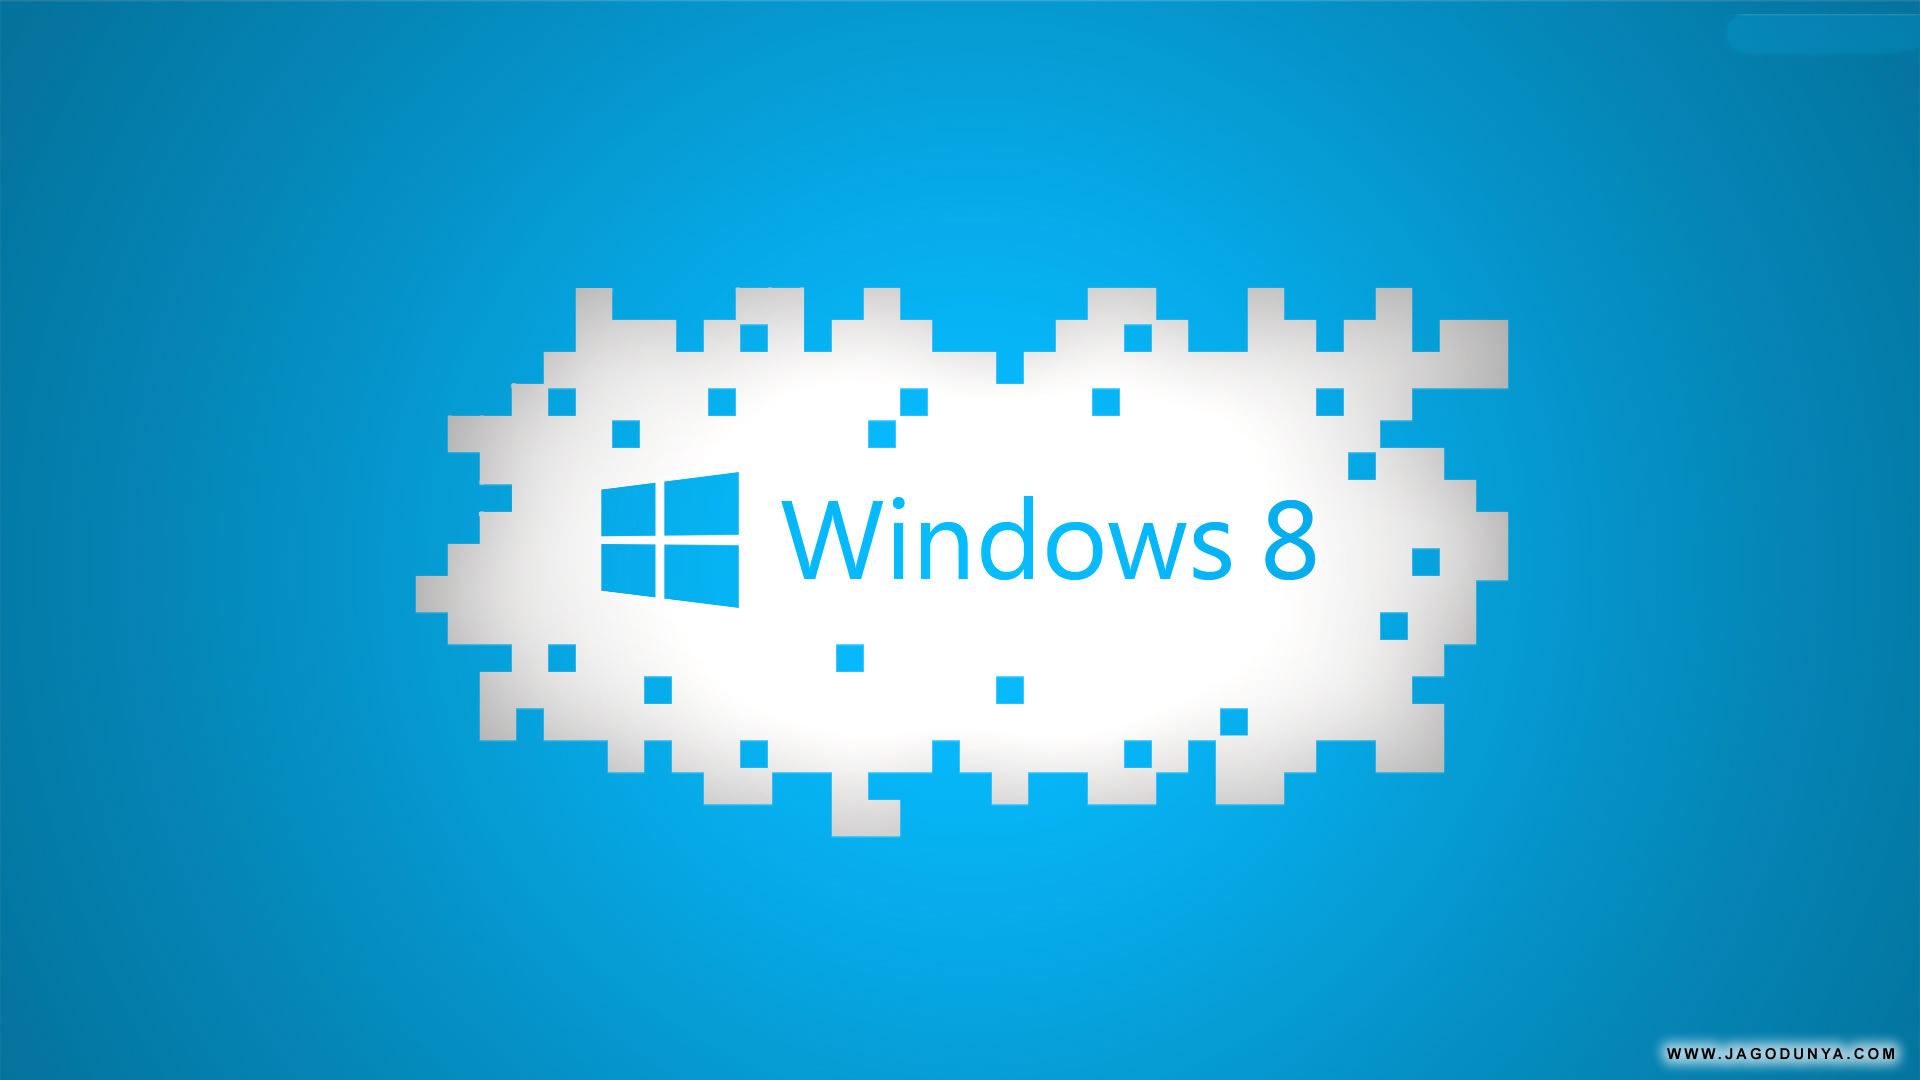 Tận hưởng bộ sưu tập hình nền Windows 8 độ phân giải cao với những tuyệt tác đa dạng từ thiên nhiên đến các cảnh đô thị ấn tượng. Click để chiêm ngưỡng và tải về miễn phí ngay!